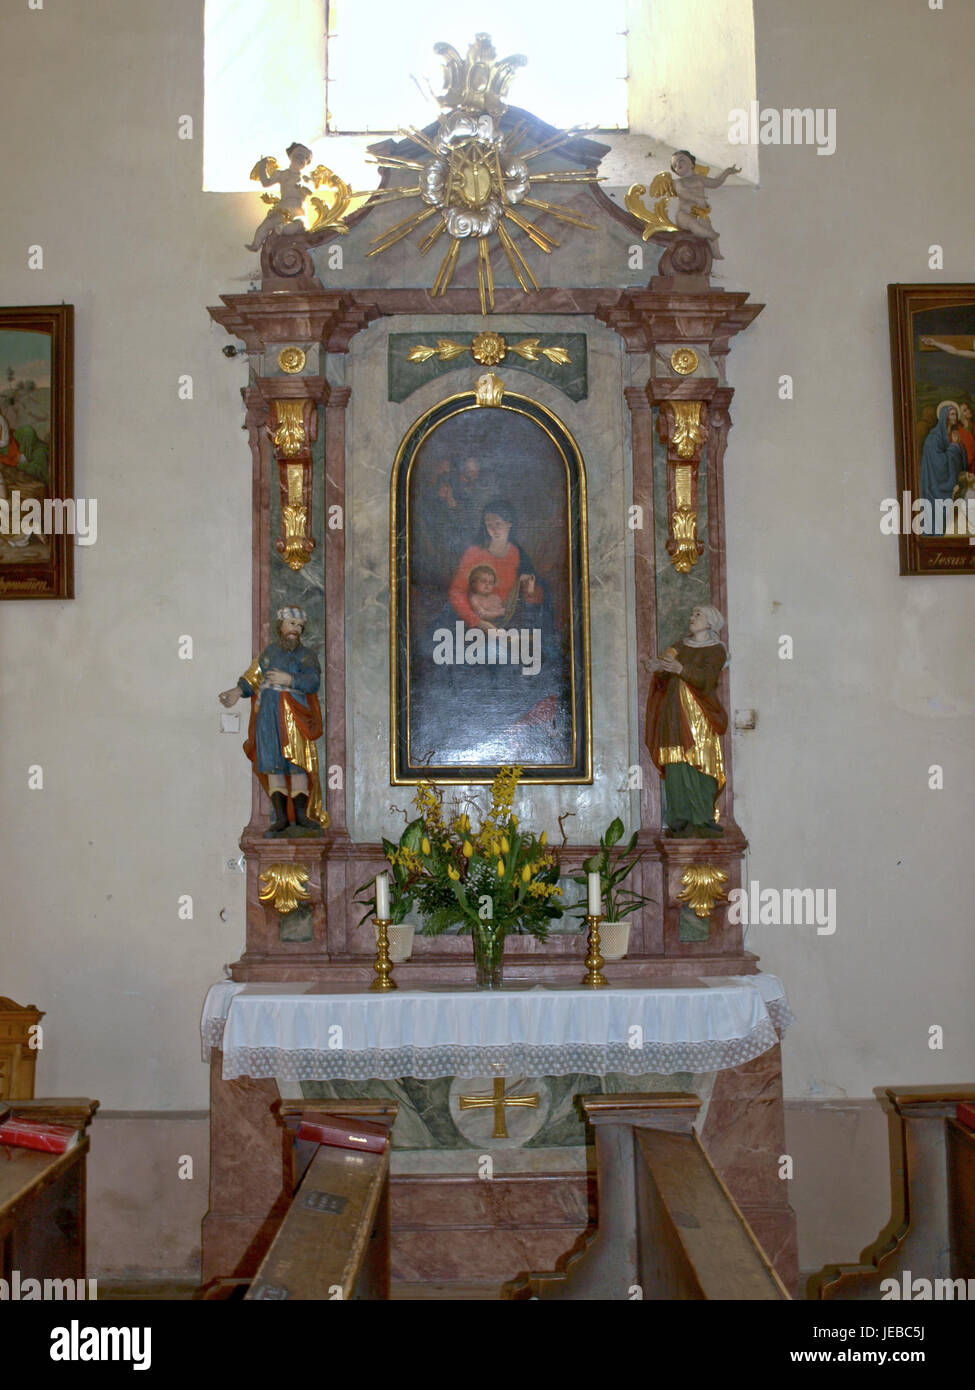 2013.04.21 - Opponitz - Pfarrkirche hl. Kunigunde - 09 Stock Photo